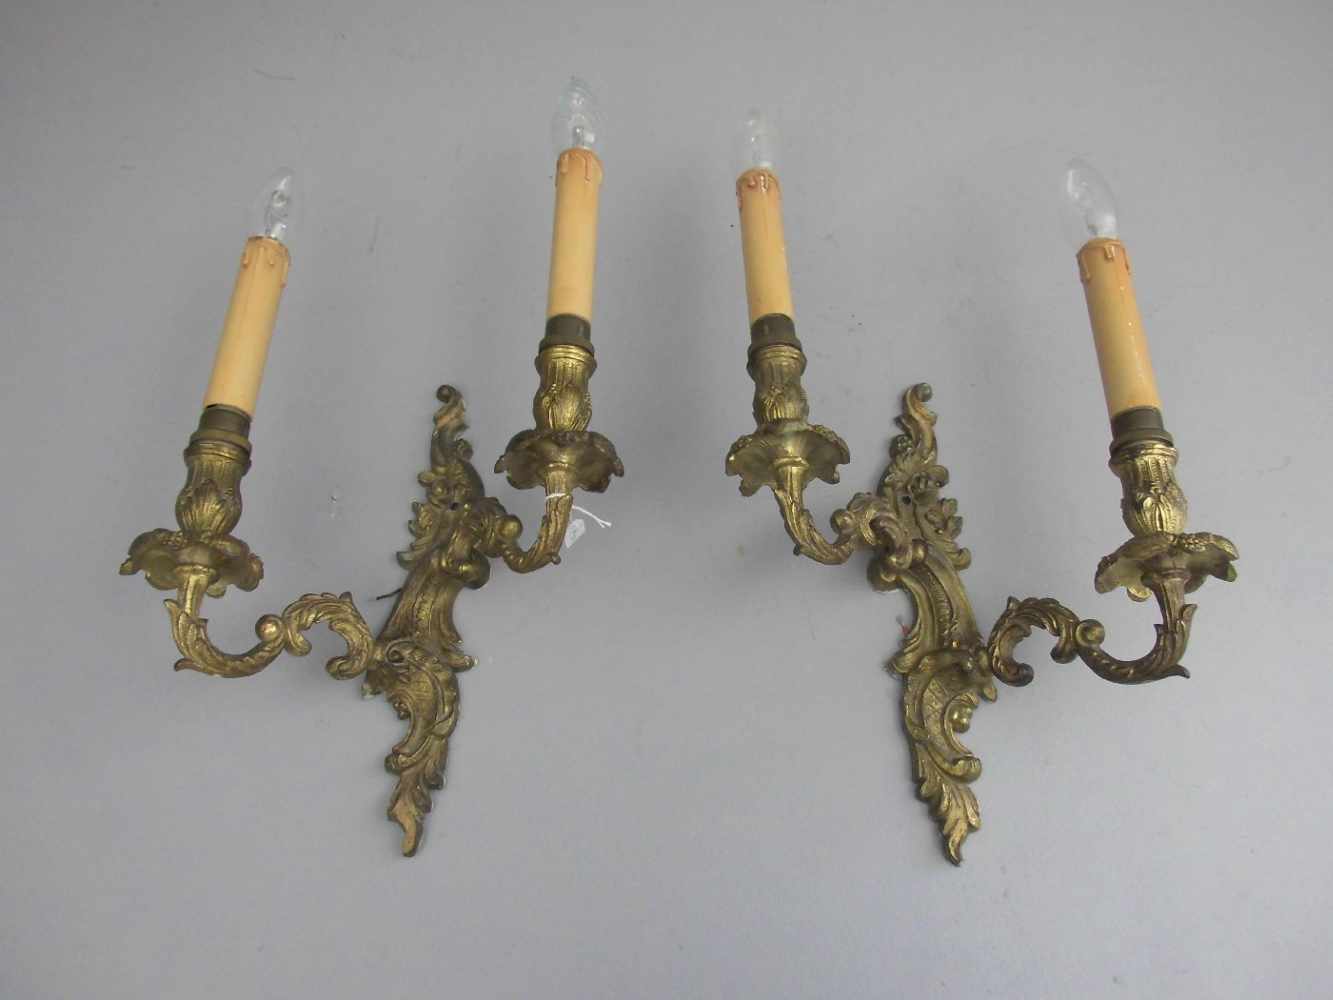 PAAR WANDLEUCHTER / scones, 1.H. 20 Jh., Gelbguss, jeweils 2-flammig elektrifiziert (ungeprüft).